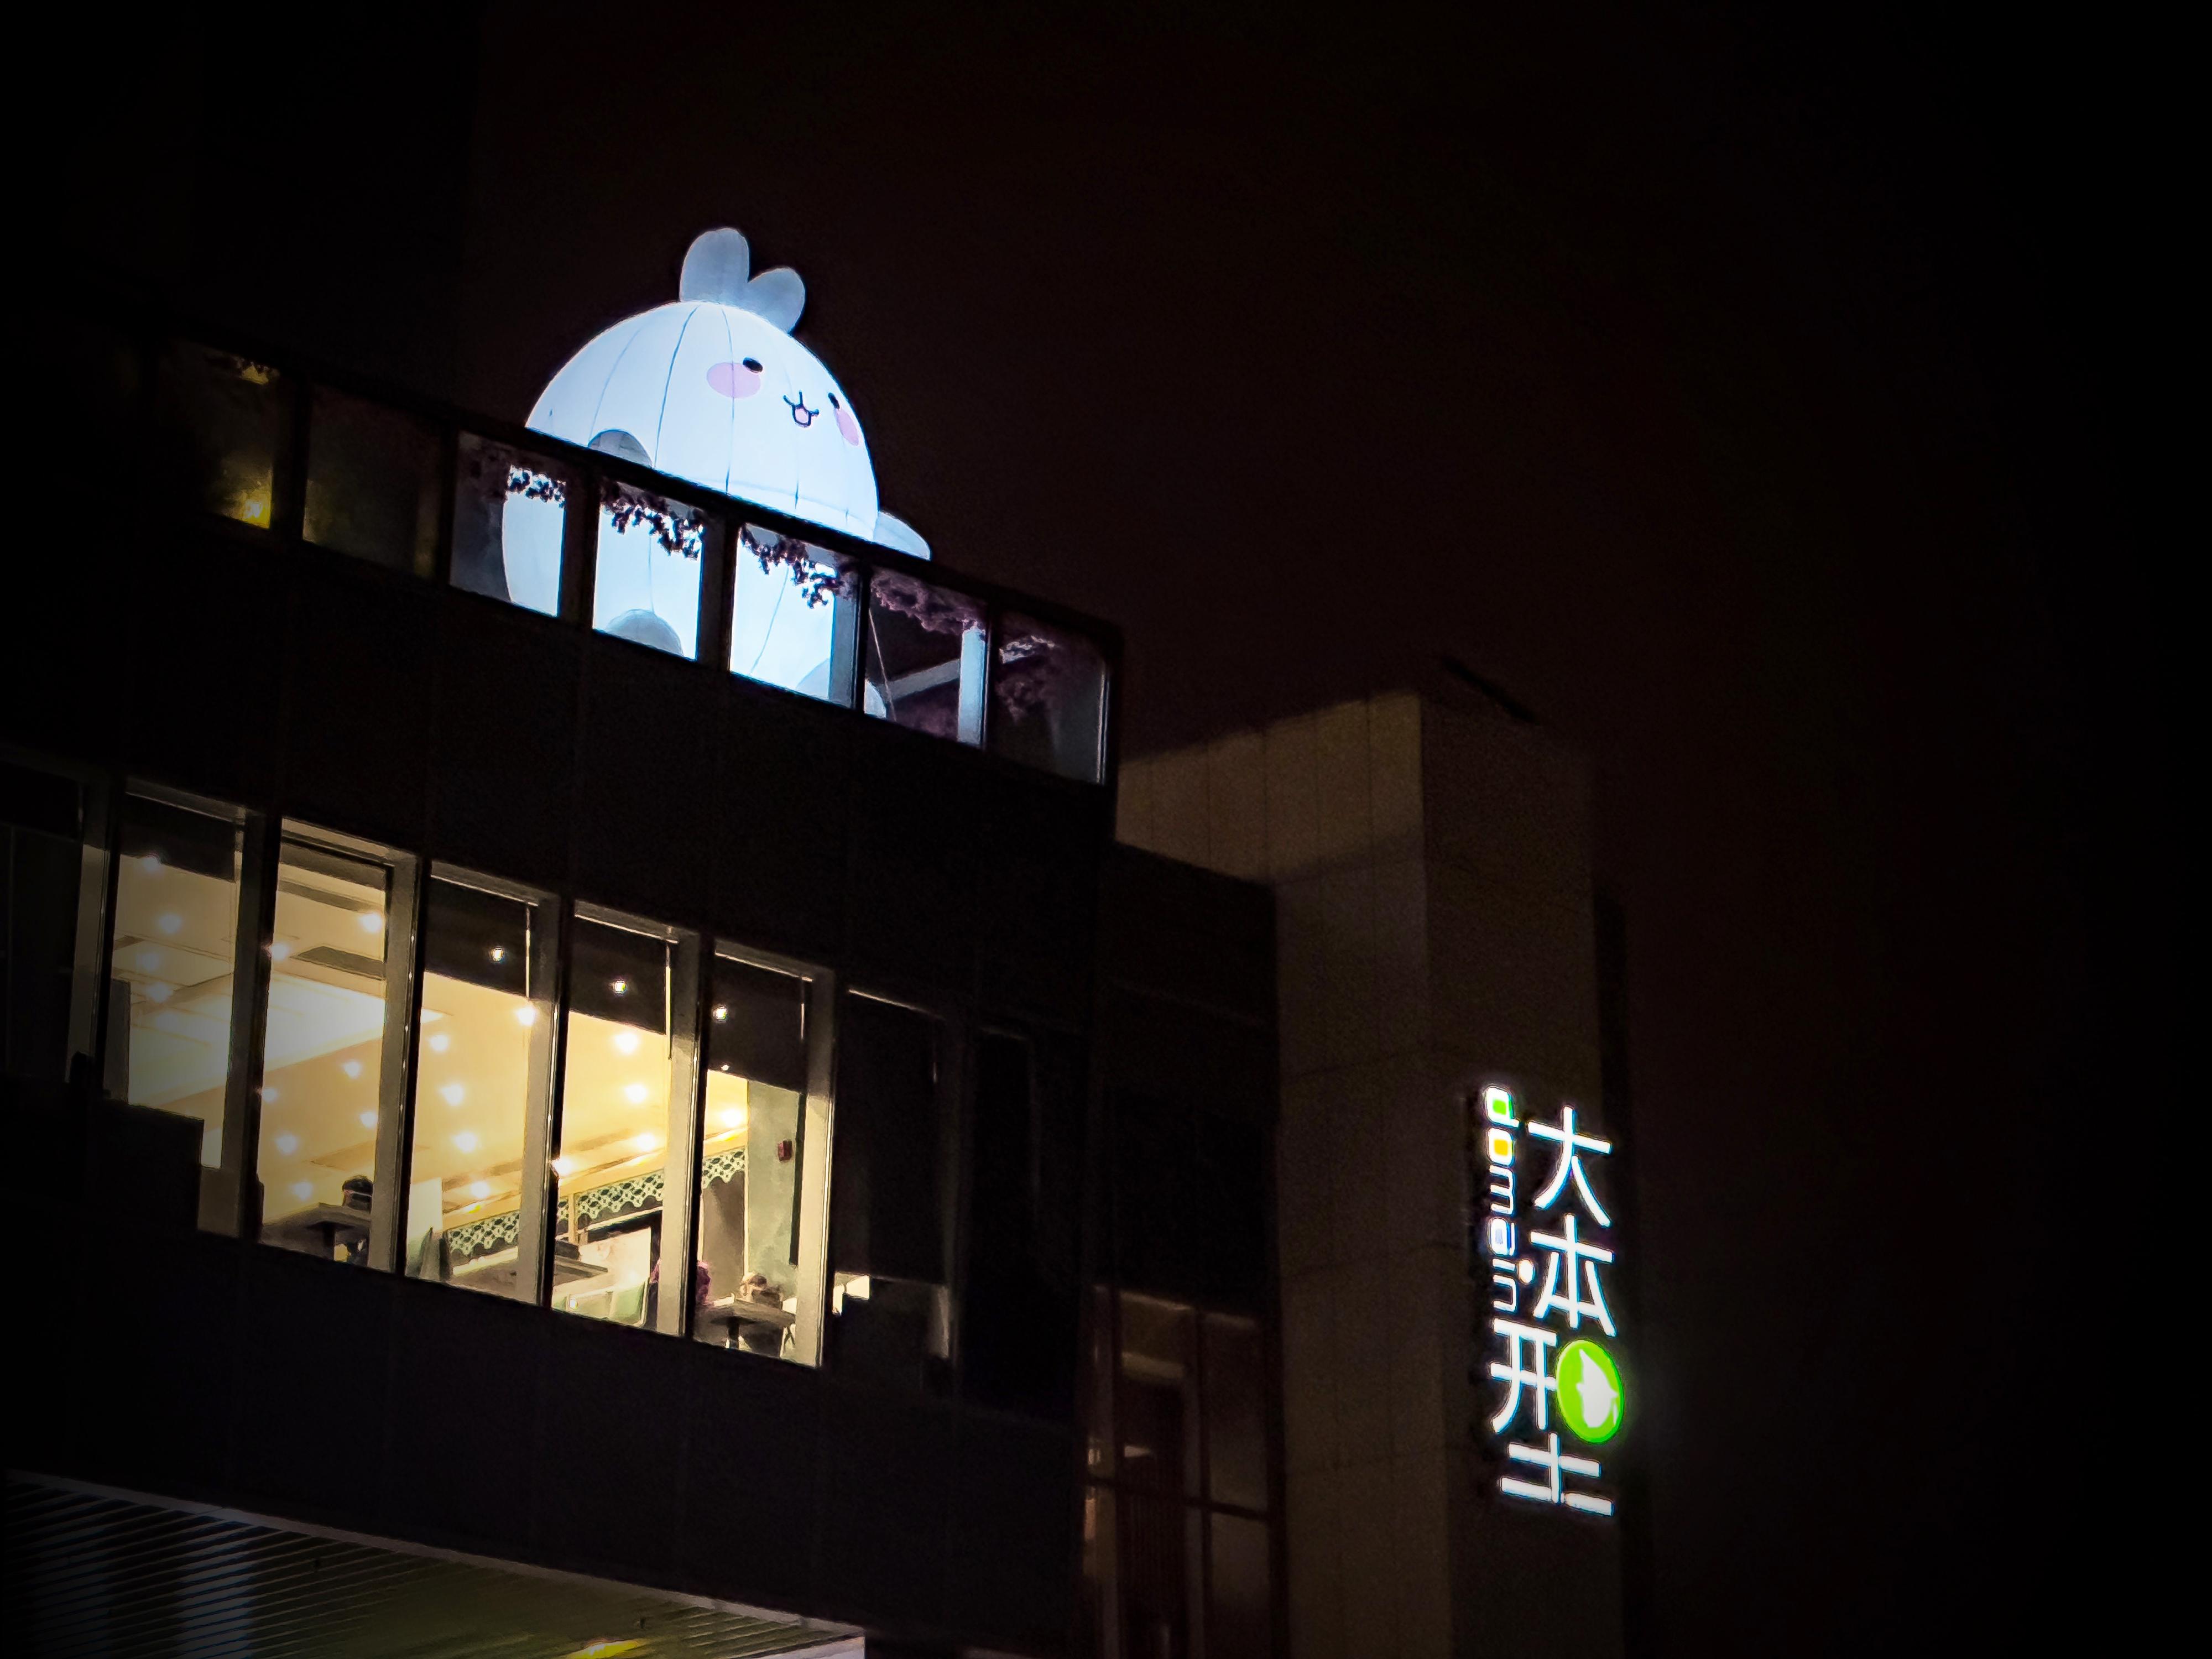 香港房屋委员会辖下位于九龙油塘的区域商场「大本型」的中庭及天台花园设置吉祥瑞兔跟游人拜年，天台花园的发亮巨兔晚上尤为亲切可爱。